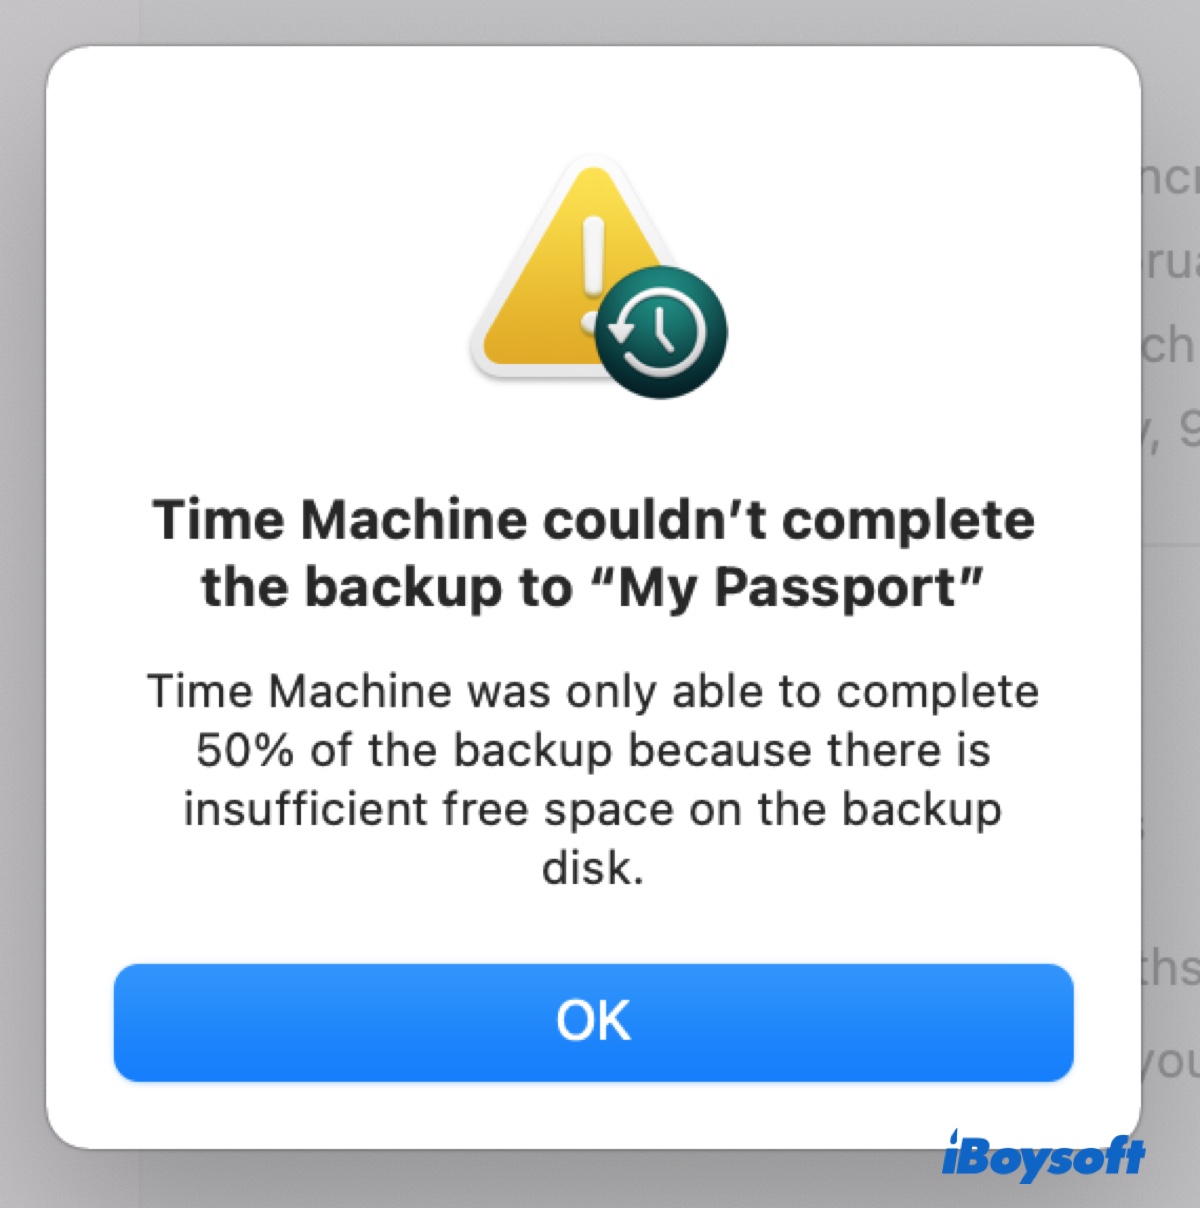 Mensaje de Time Machine sobre la copia de seguridad no completada por espacio insuficiente